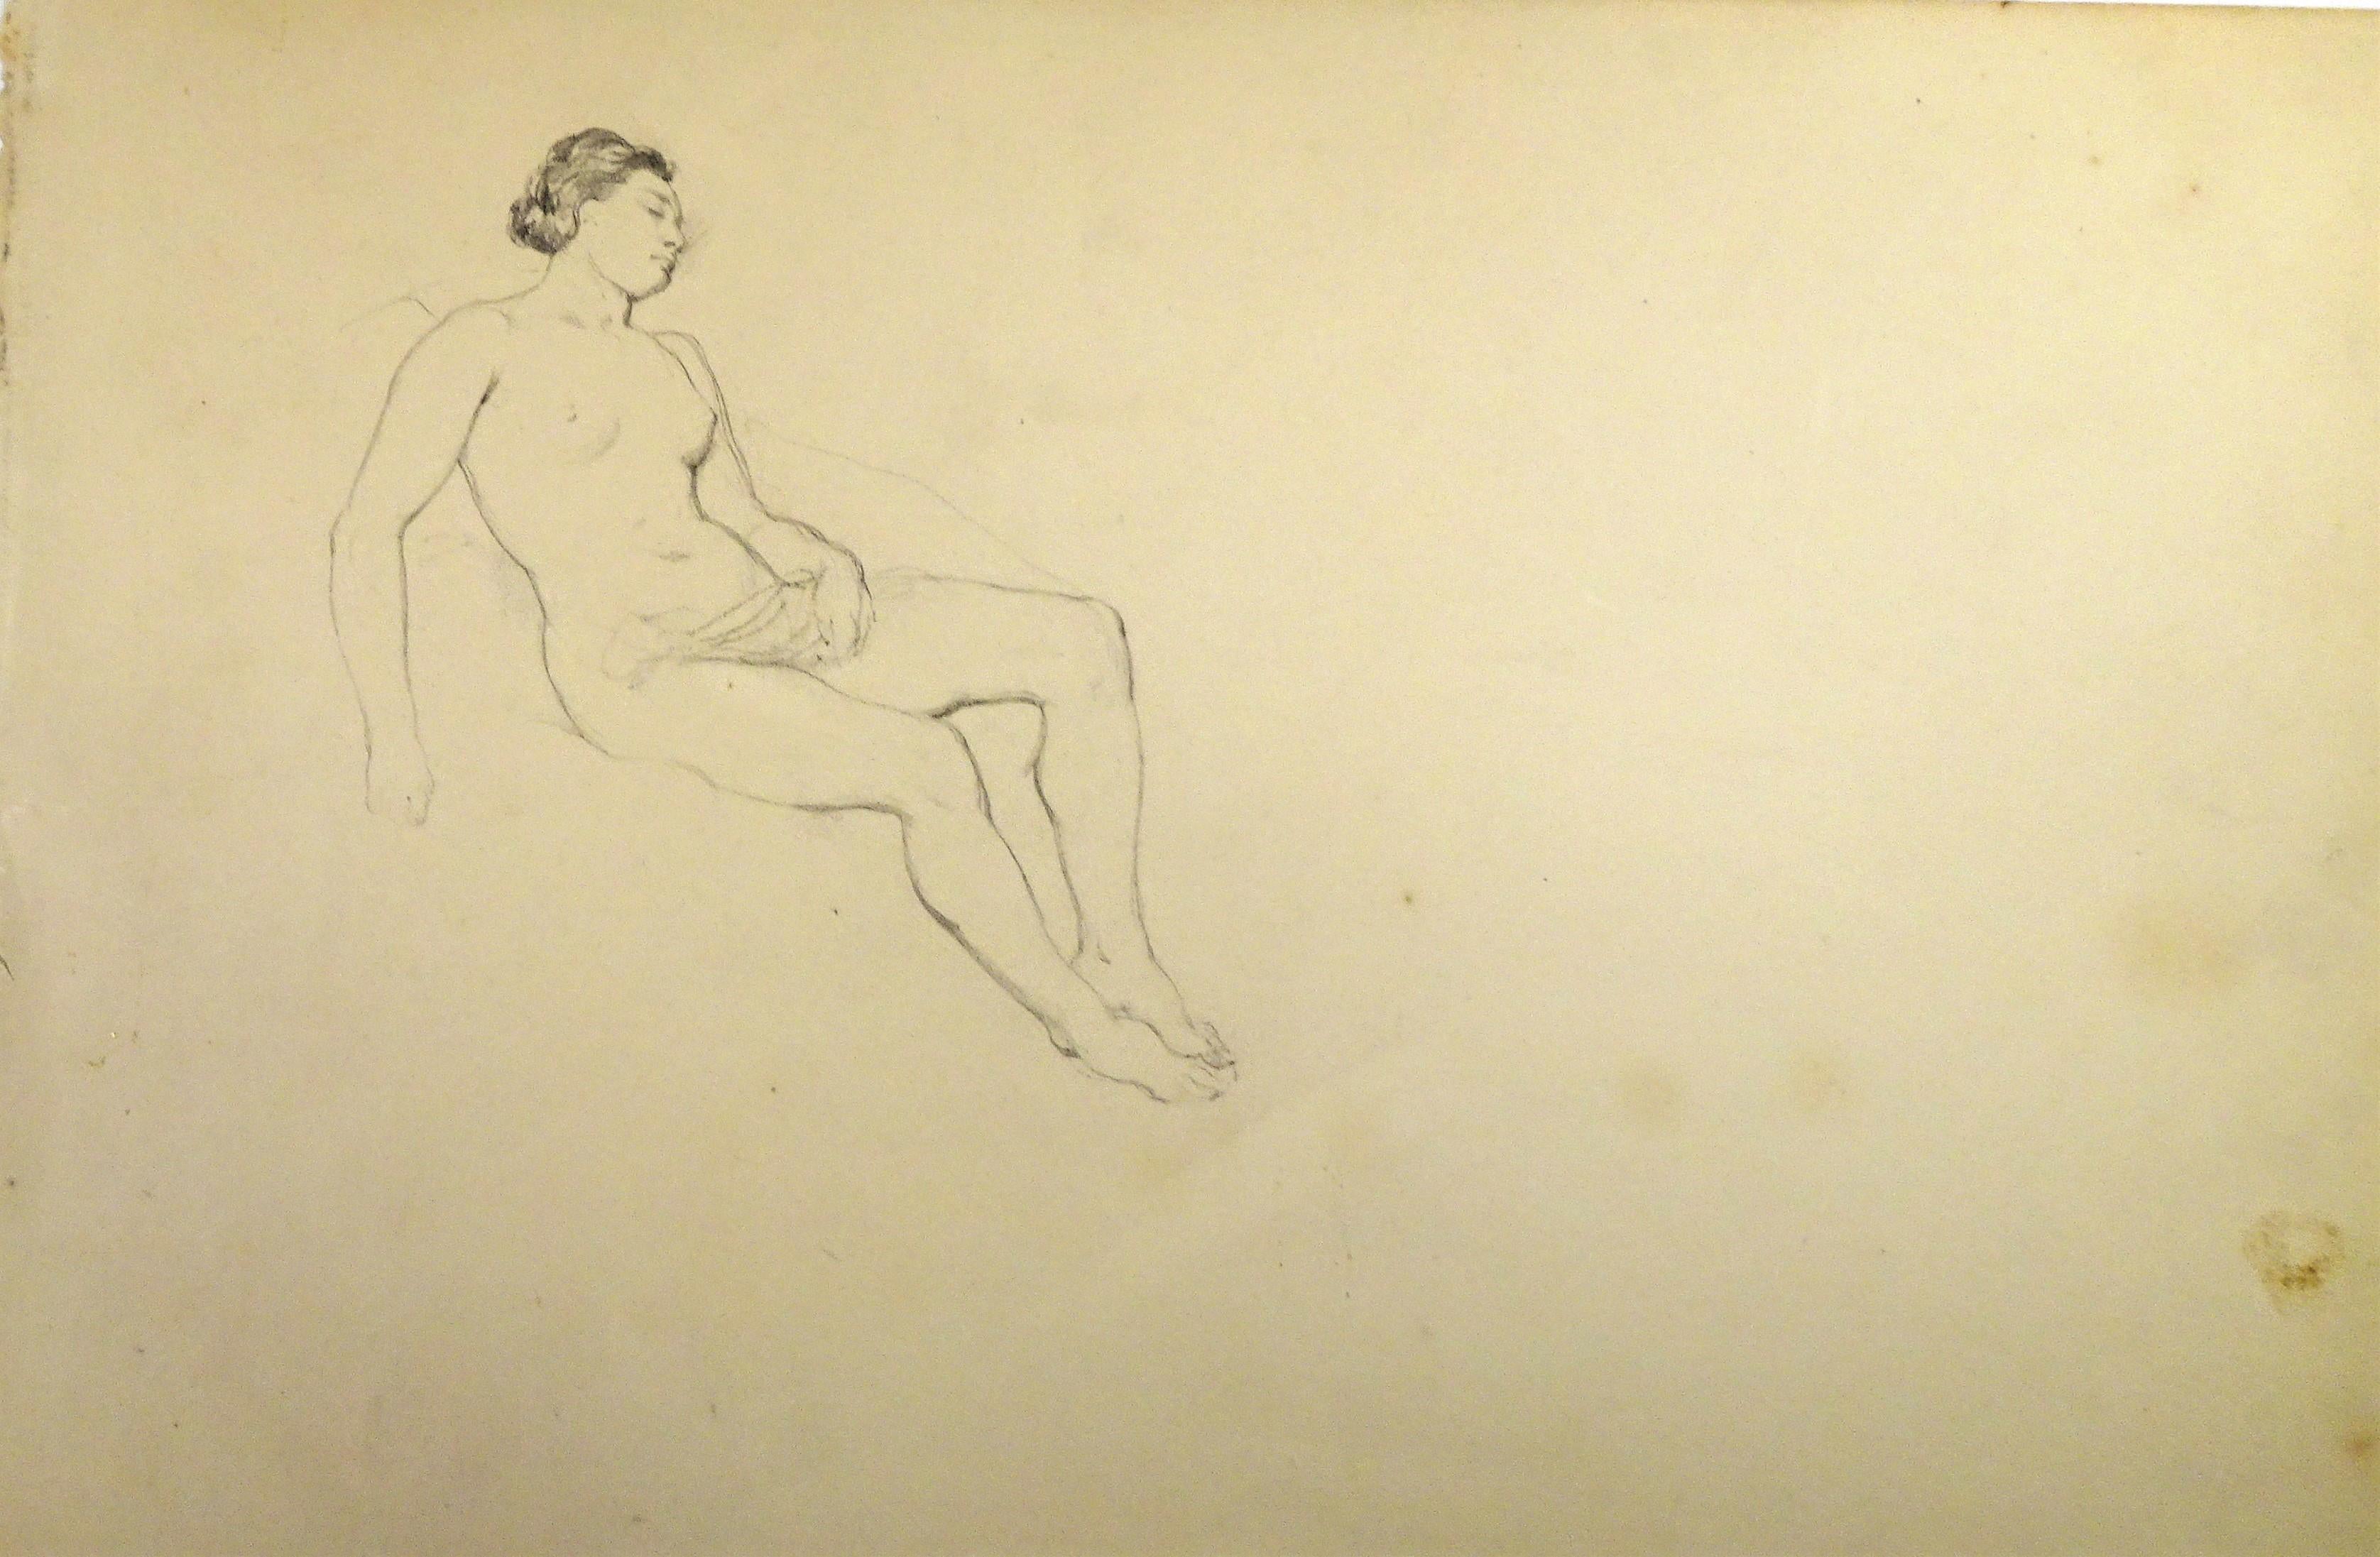 Femme Nue - Original Pencil Drawing by Horace Vernet - Mid 1800 - Art by Émile Jean-Horace Vernet 